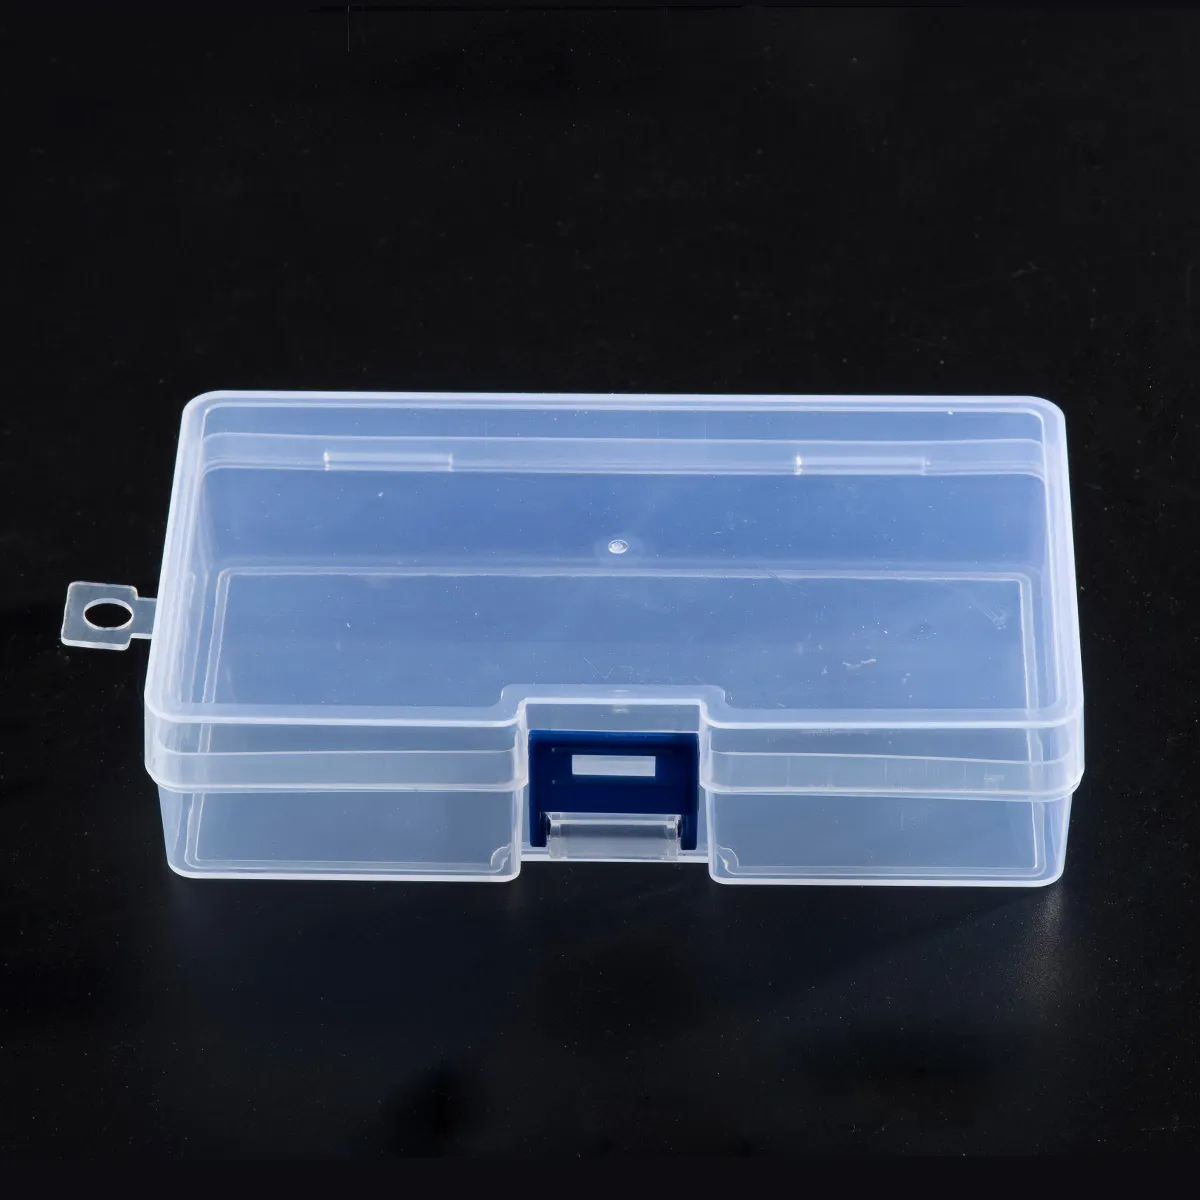 사각형 플라스틱 상자 빈 상자 파란색 플라스틱 클립 저장할 작은 항목 및 투명 플라스틱 가방